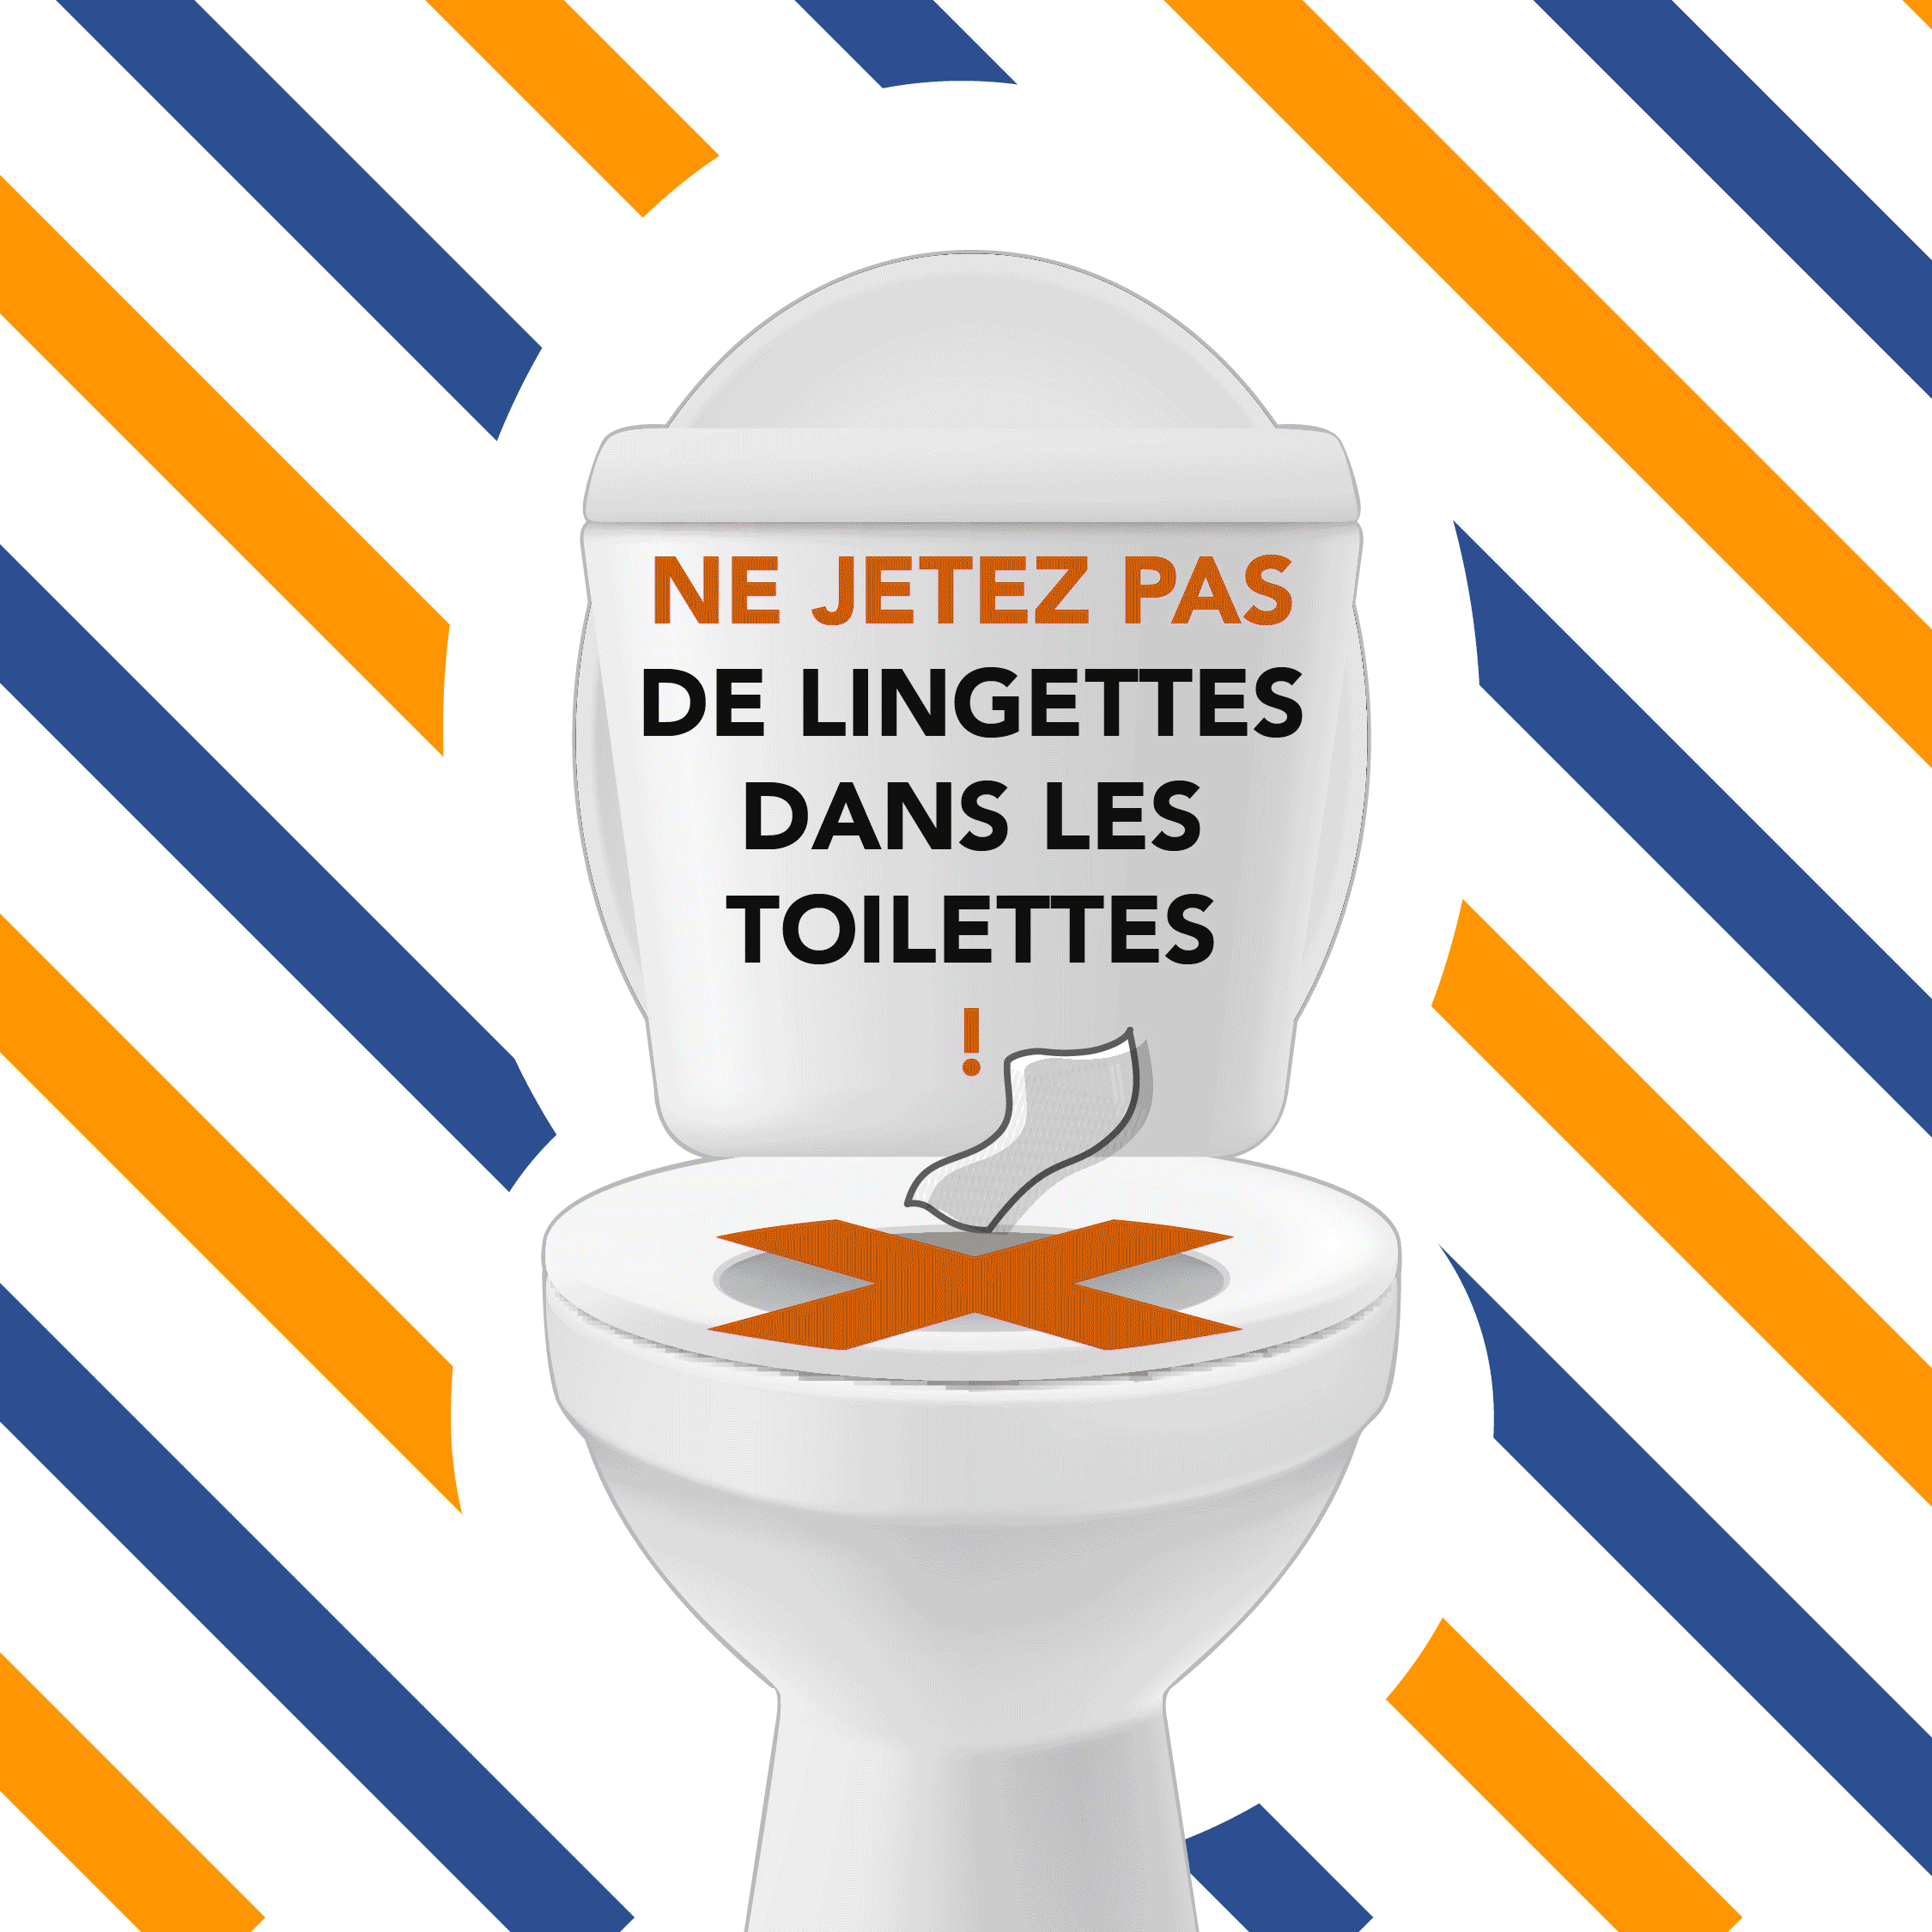 STOP aux lingettes dans les toilettes - Lunery